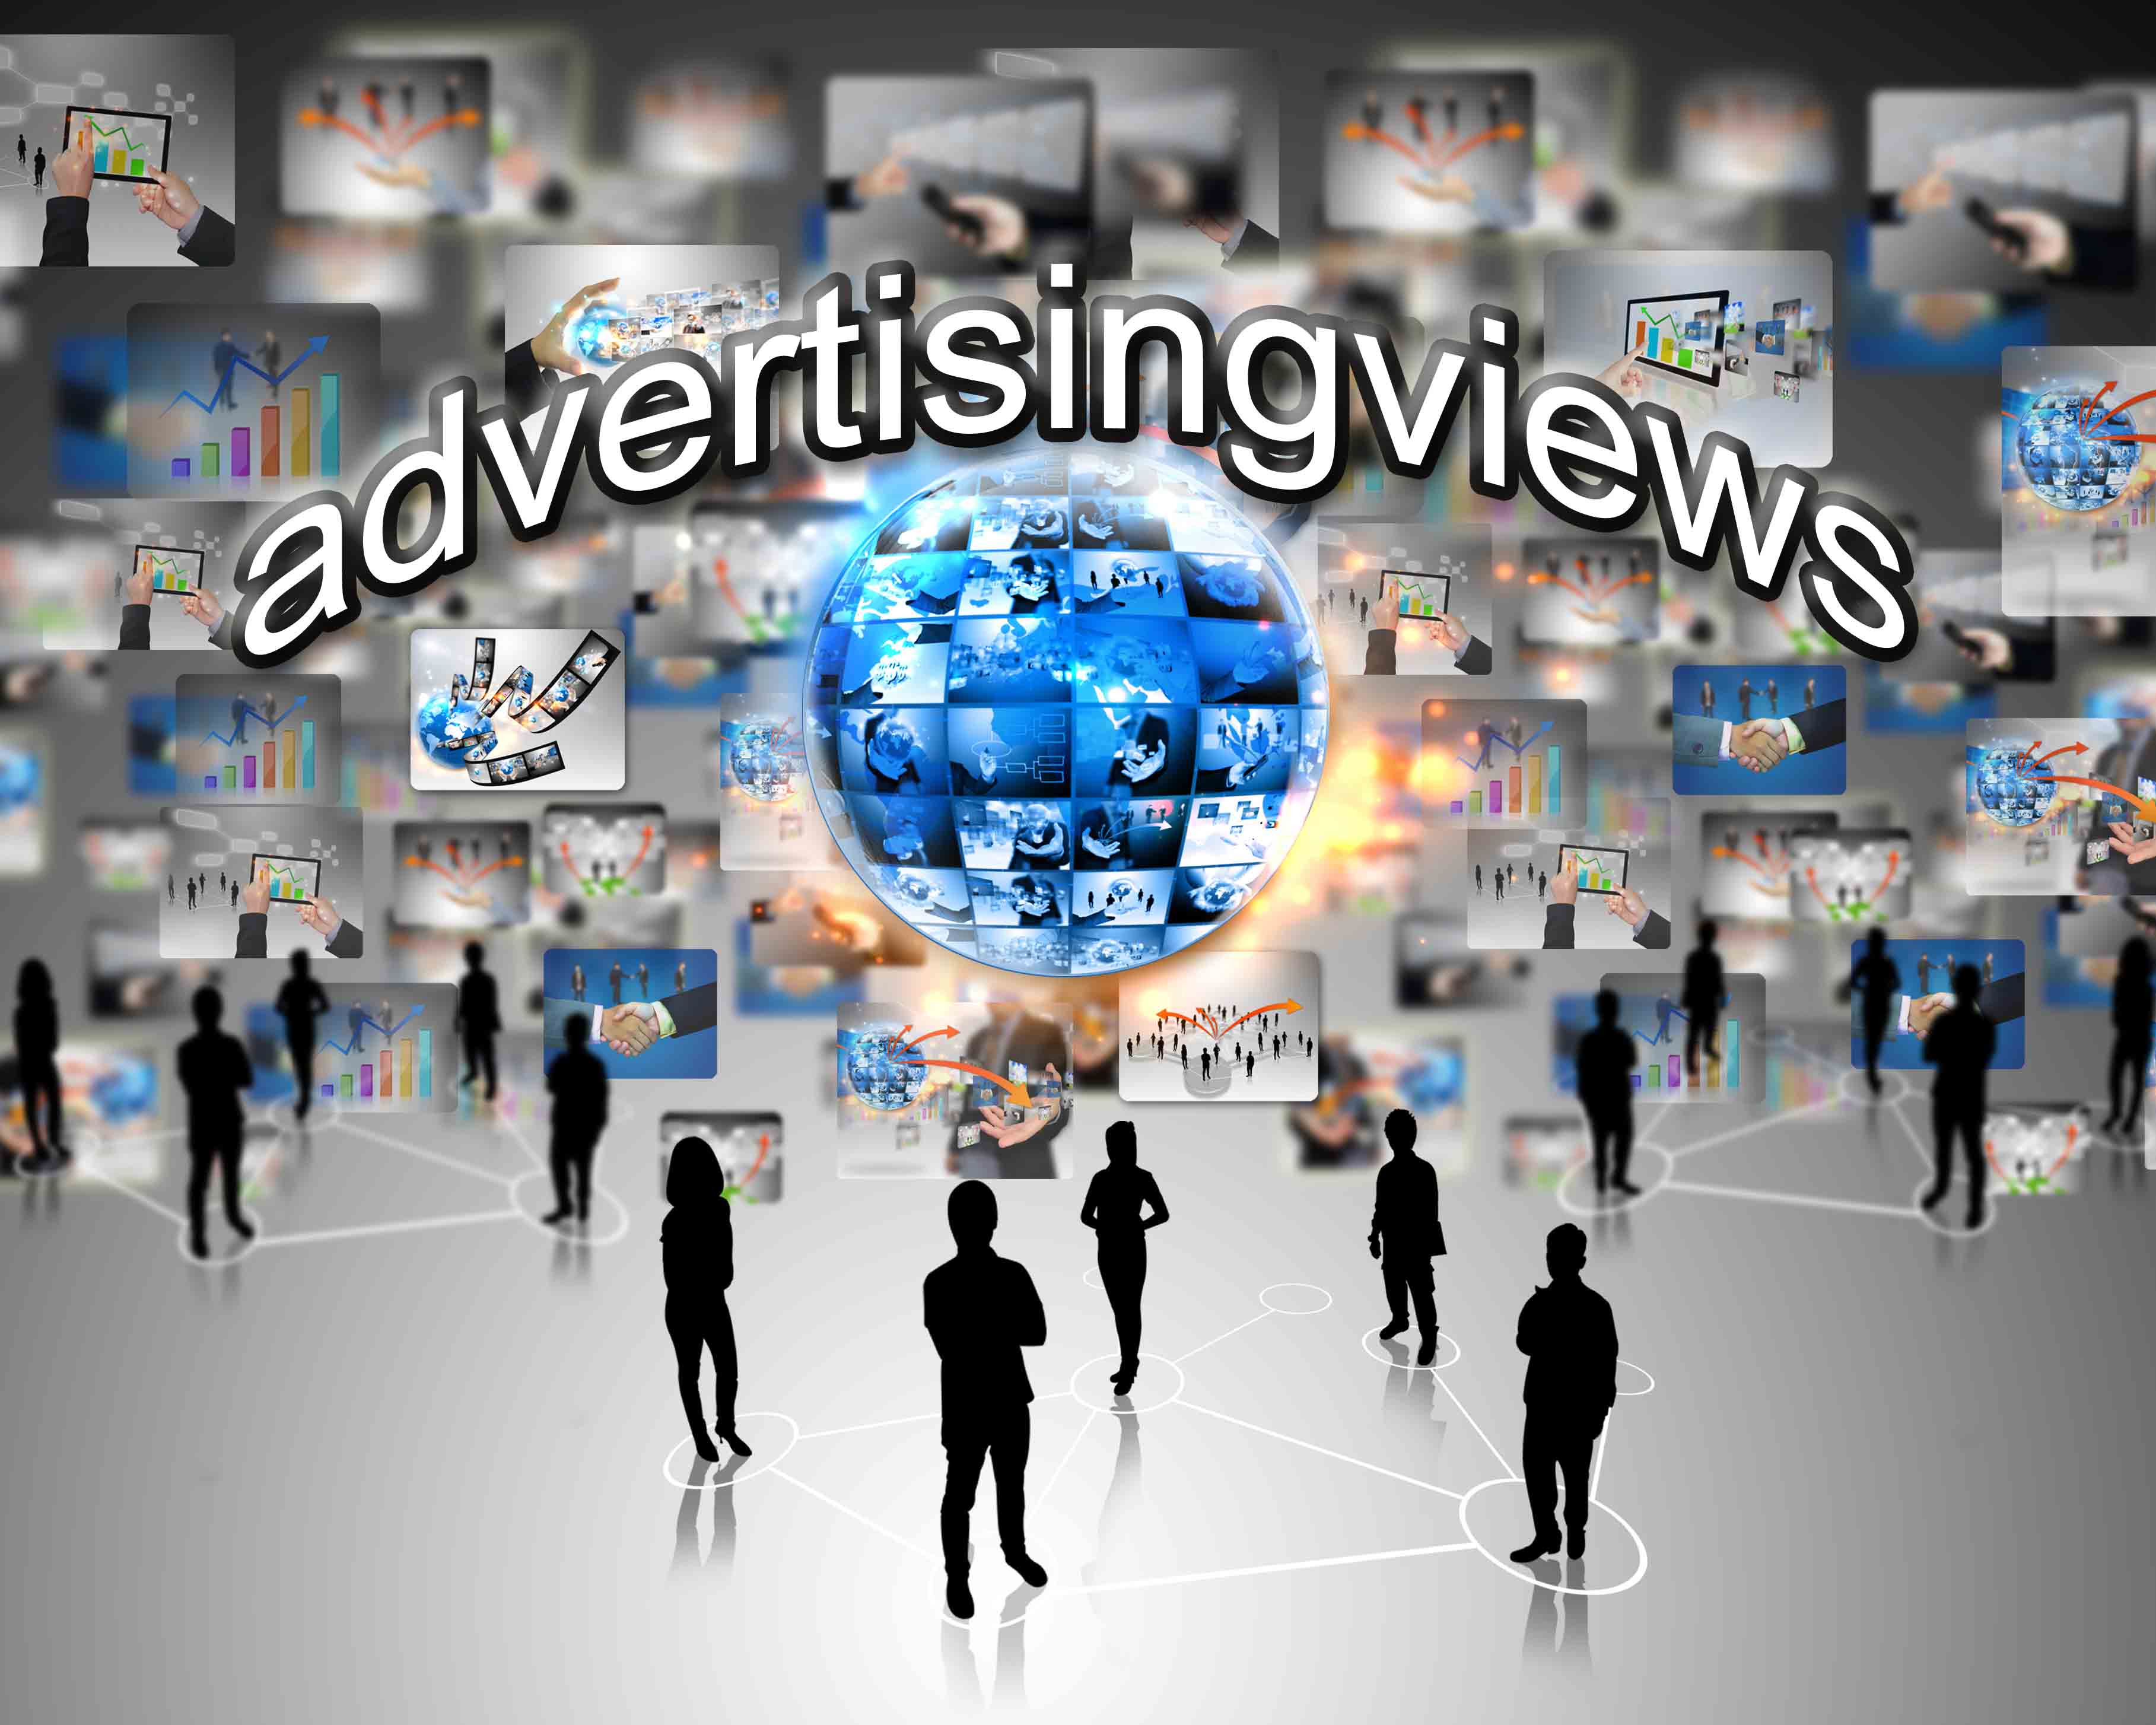 advertising views Kopie.jpg